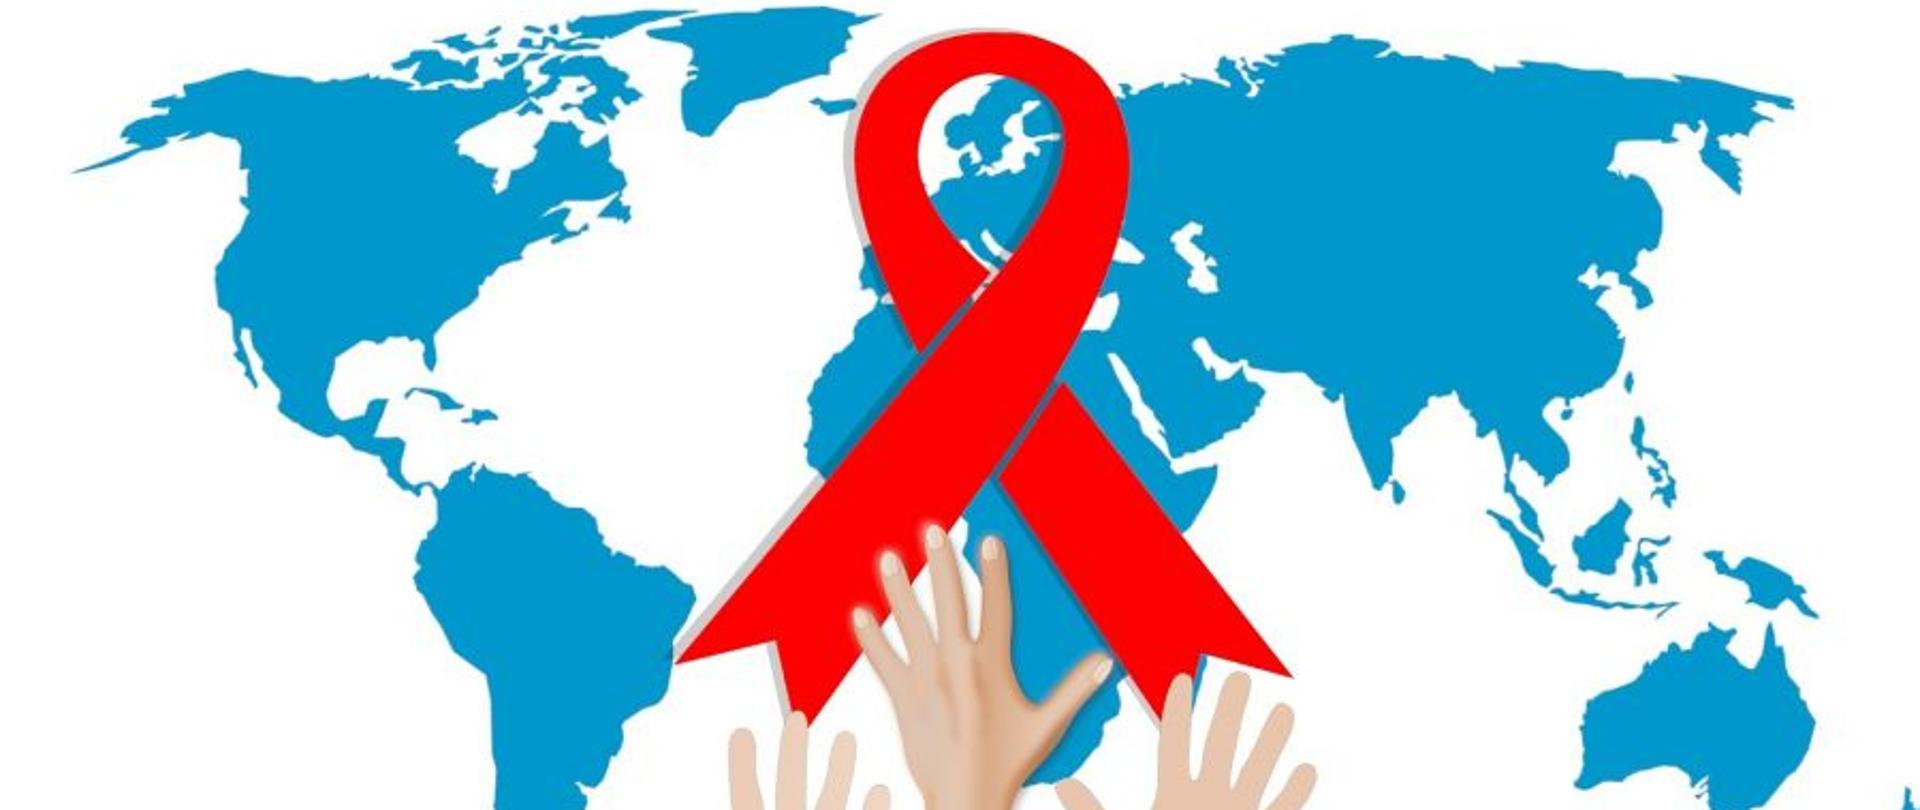 1 grudnia światowy dzień AIDS